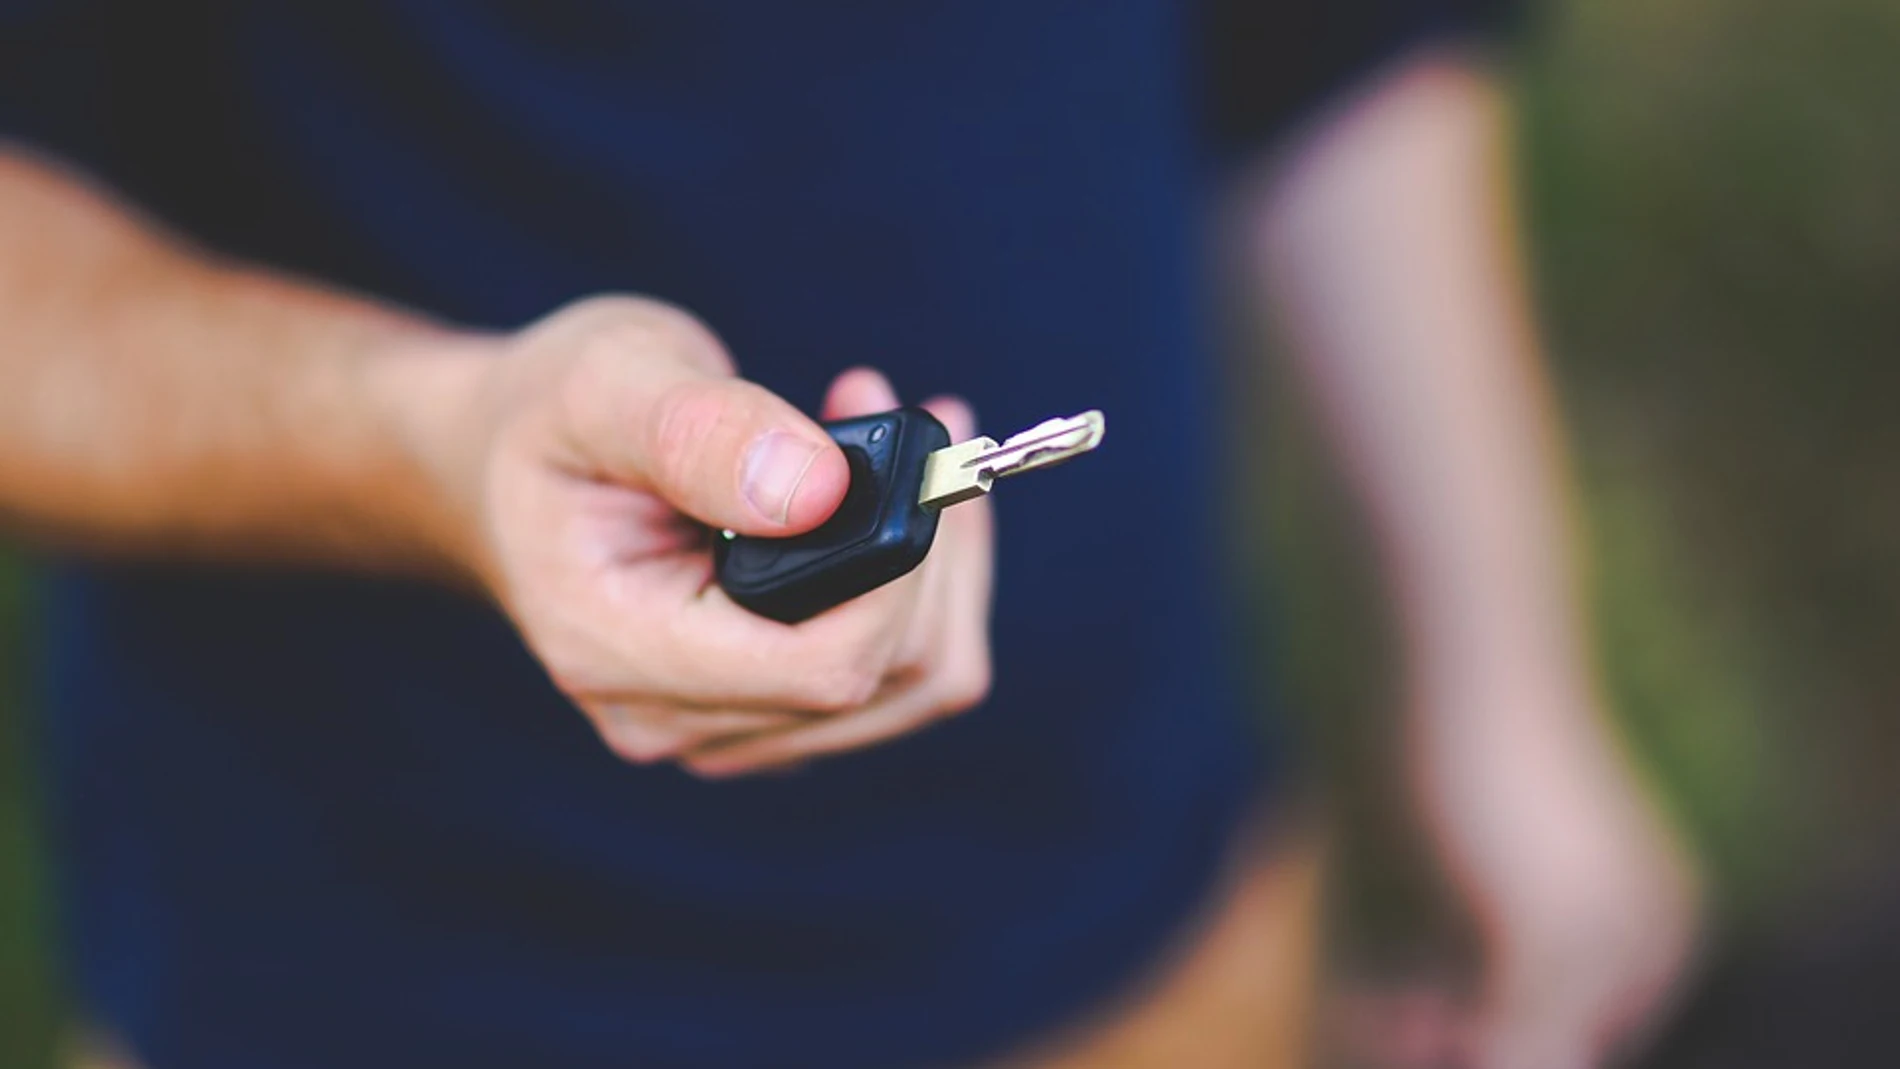 La llave inteligente de un coche se puede piratear, según alertan los expertos/Pixabay